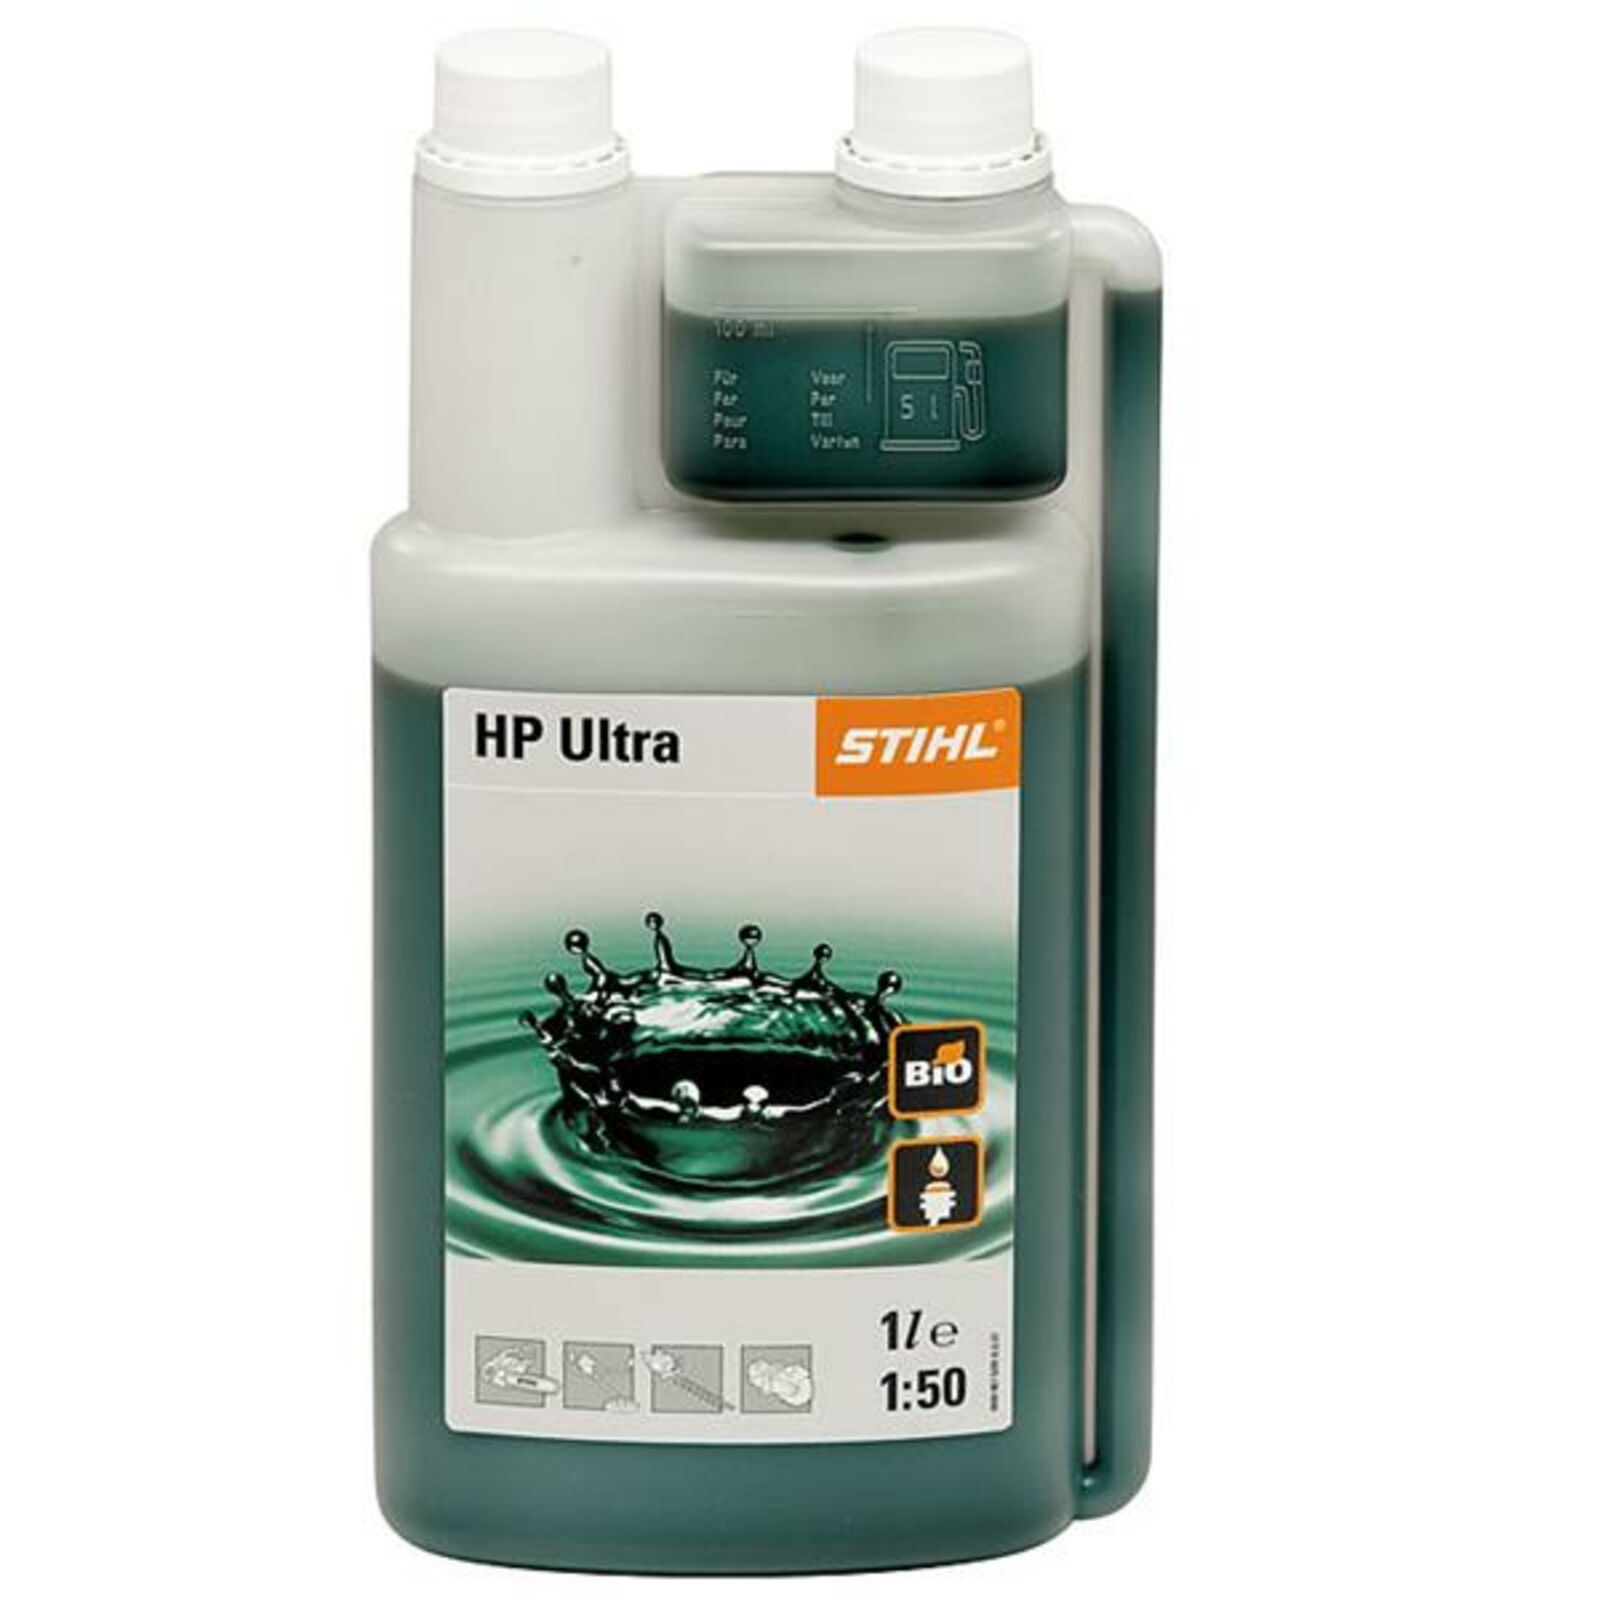 Stihl olaj HP ULTRA 2T | kertmotor.hu kertigépek, alkatrészek, stihl .